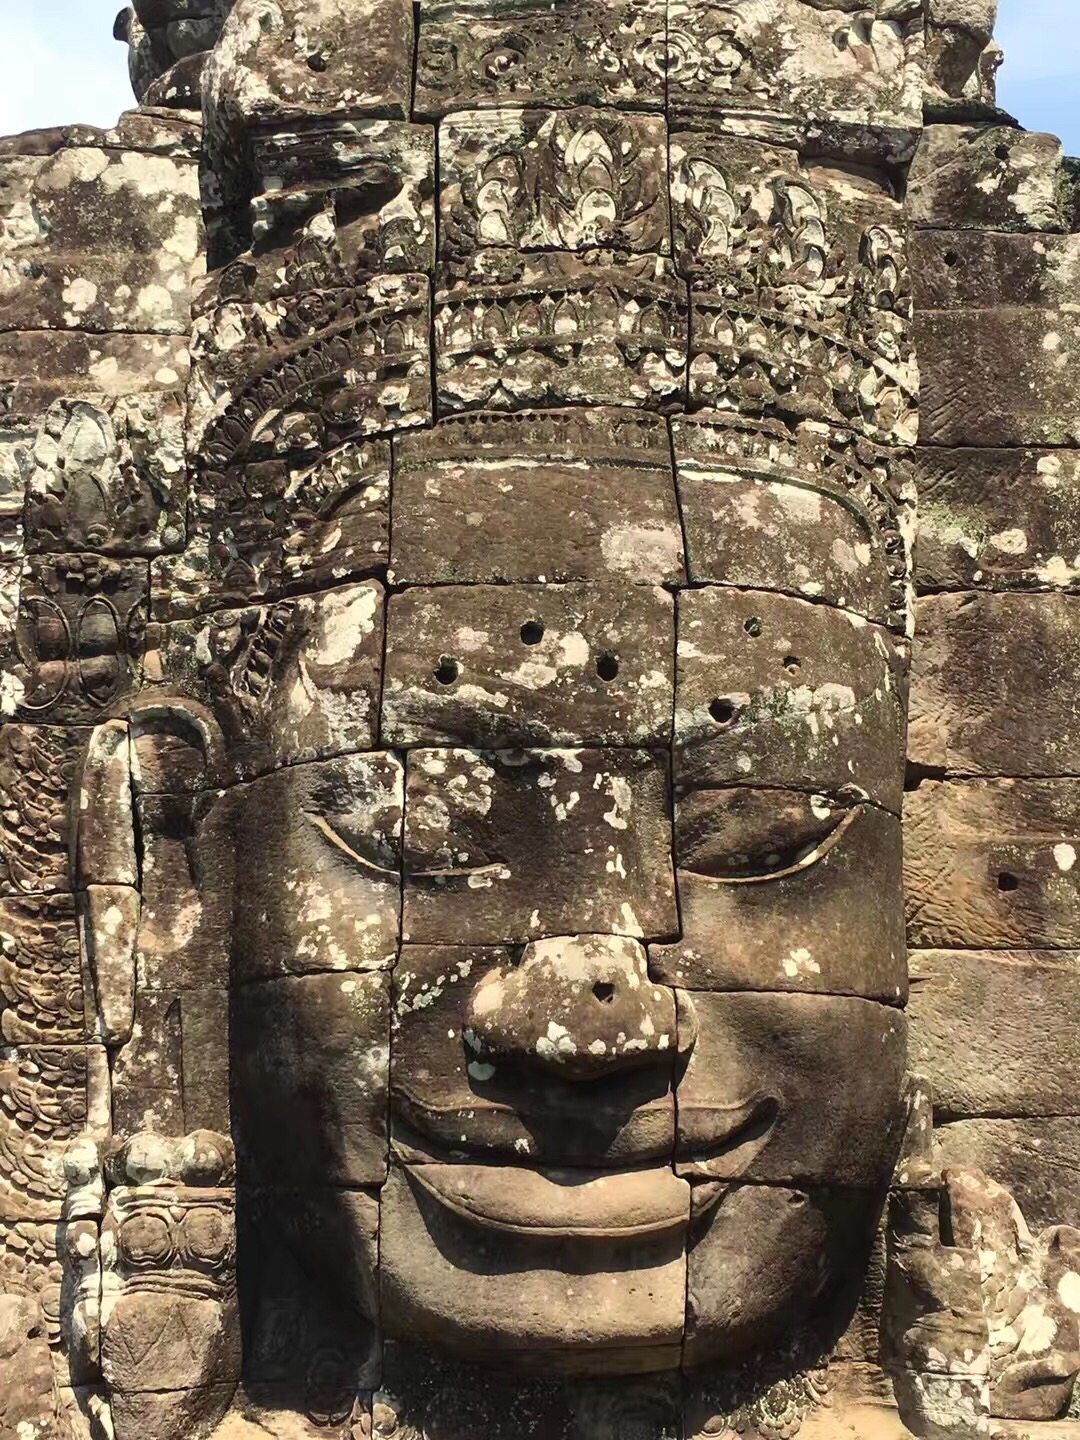 这个是特别有名的四面佛。高棉的微笑。大家可以从不同的角度能够看到佛像不同程度的微笑。听说朝拜这座佛像